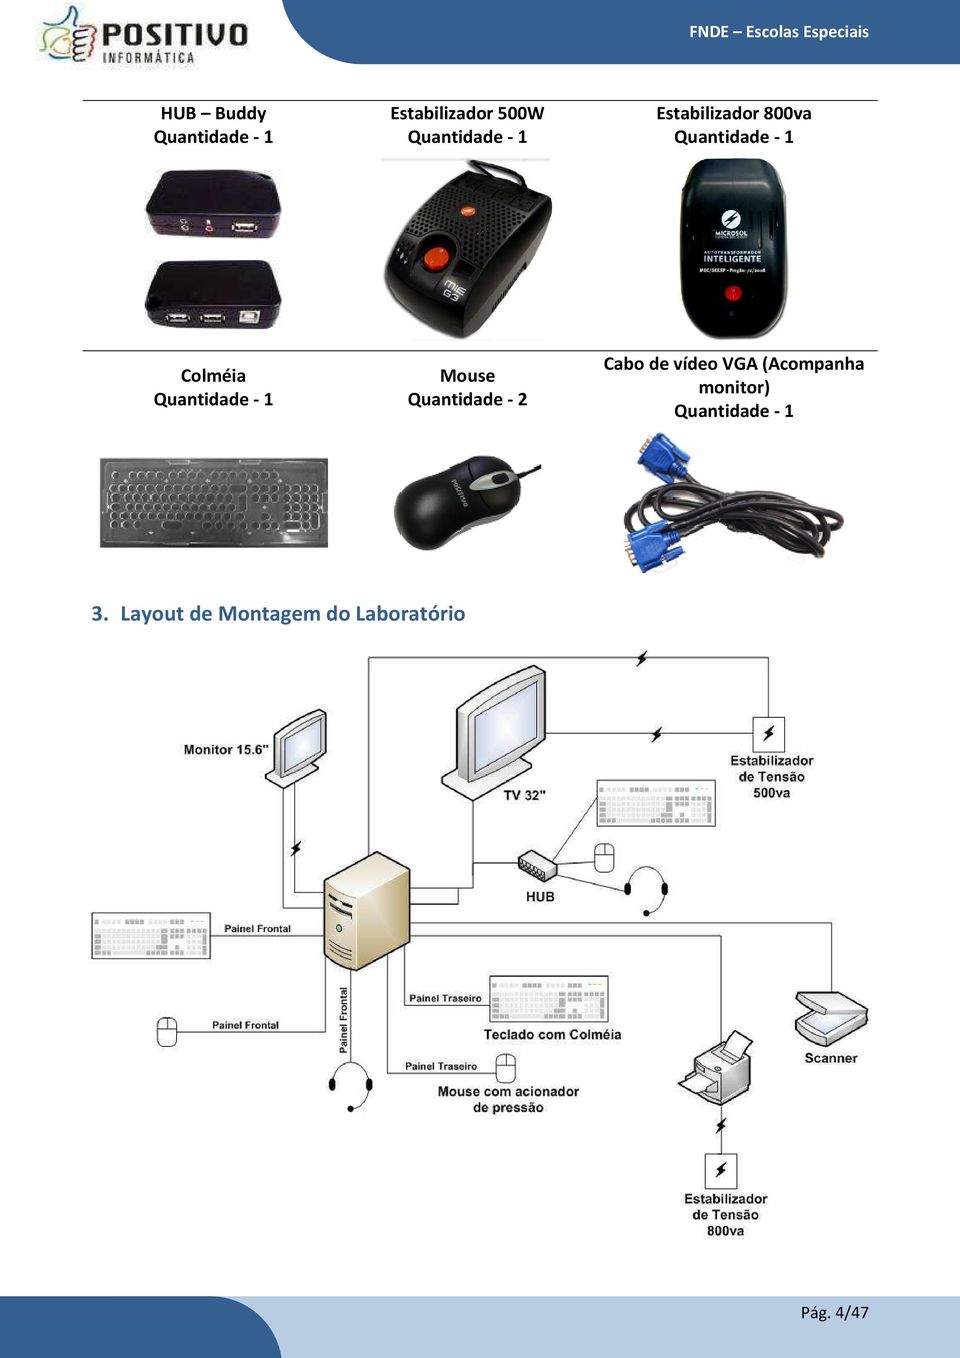 Mouse Quantidade - 2 Cabo de vídeo VGA (Acompanha monitor)